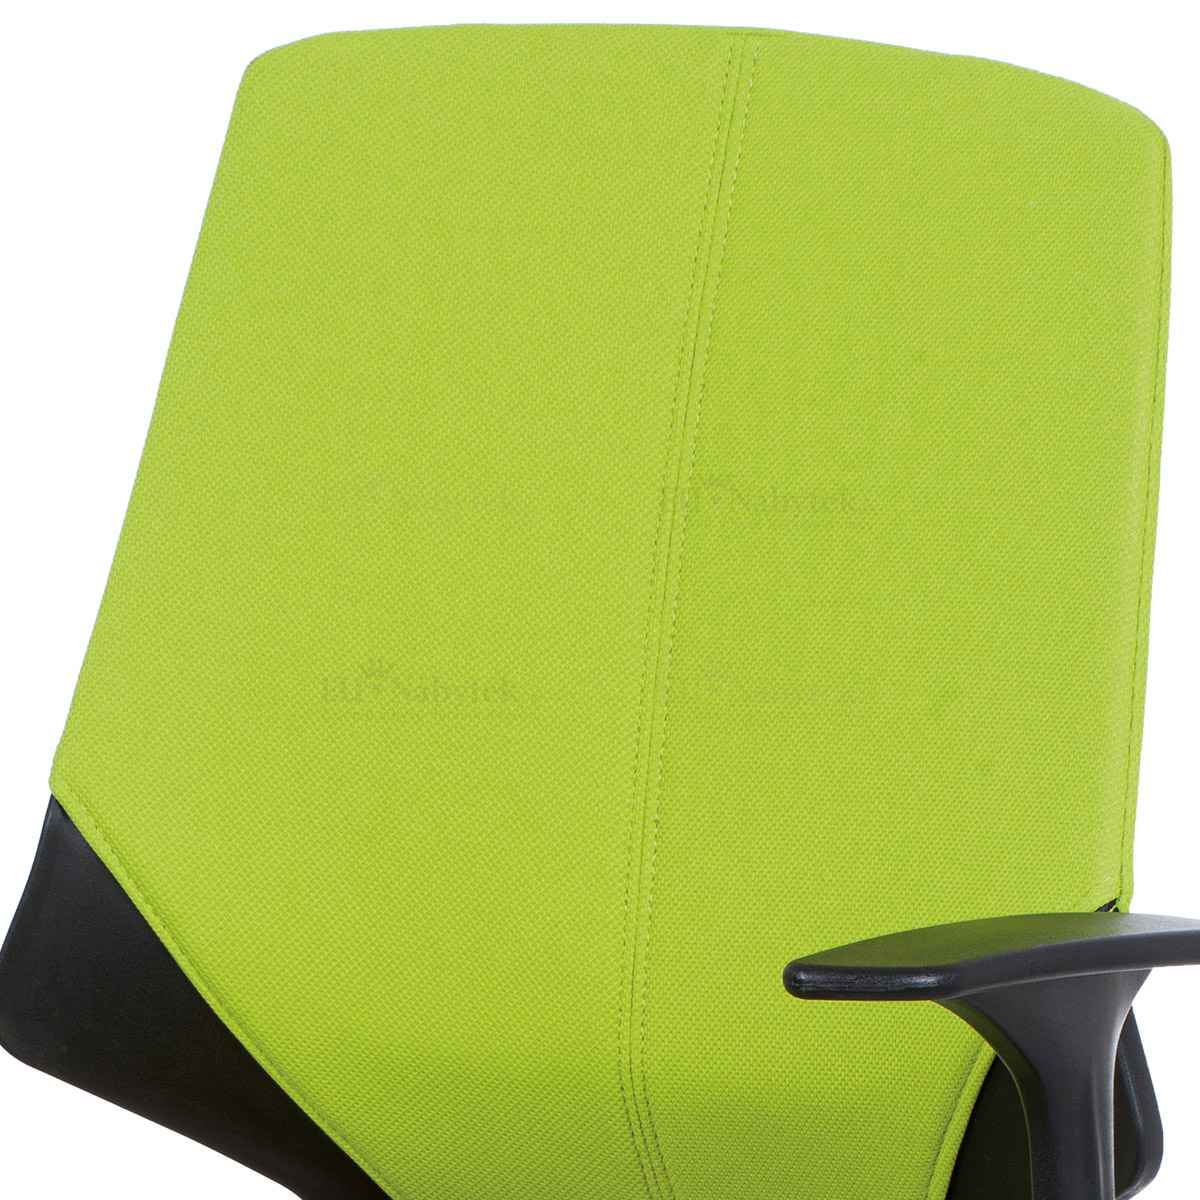 Kancelářská židle, zelená látka, černé PP područky DOPRODEJ